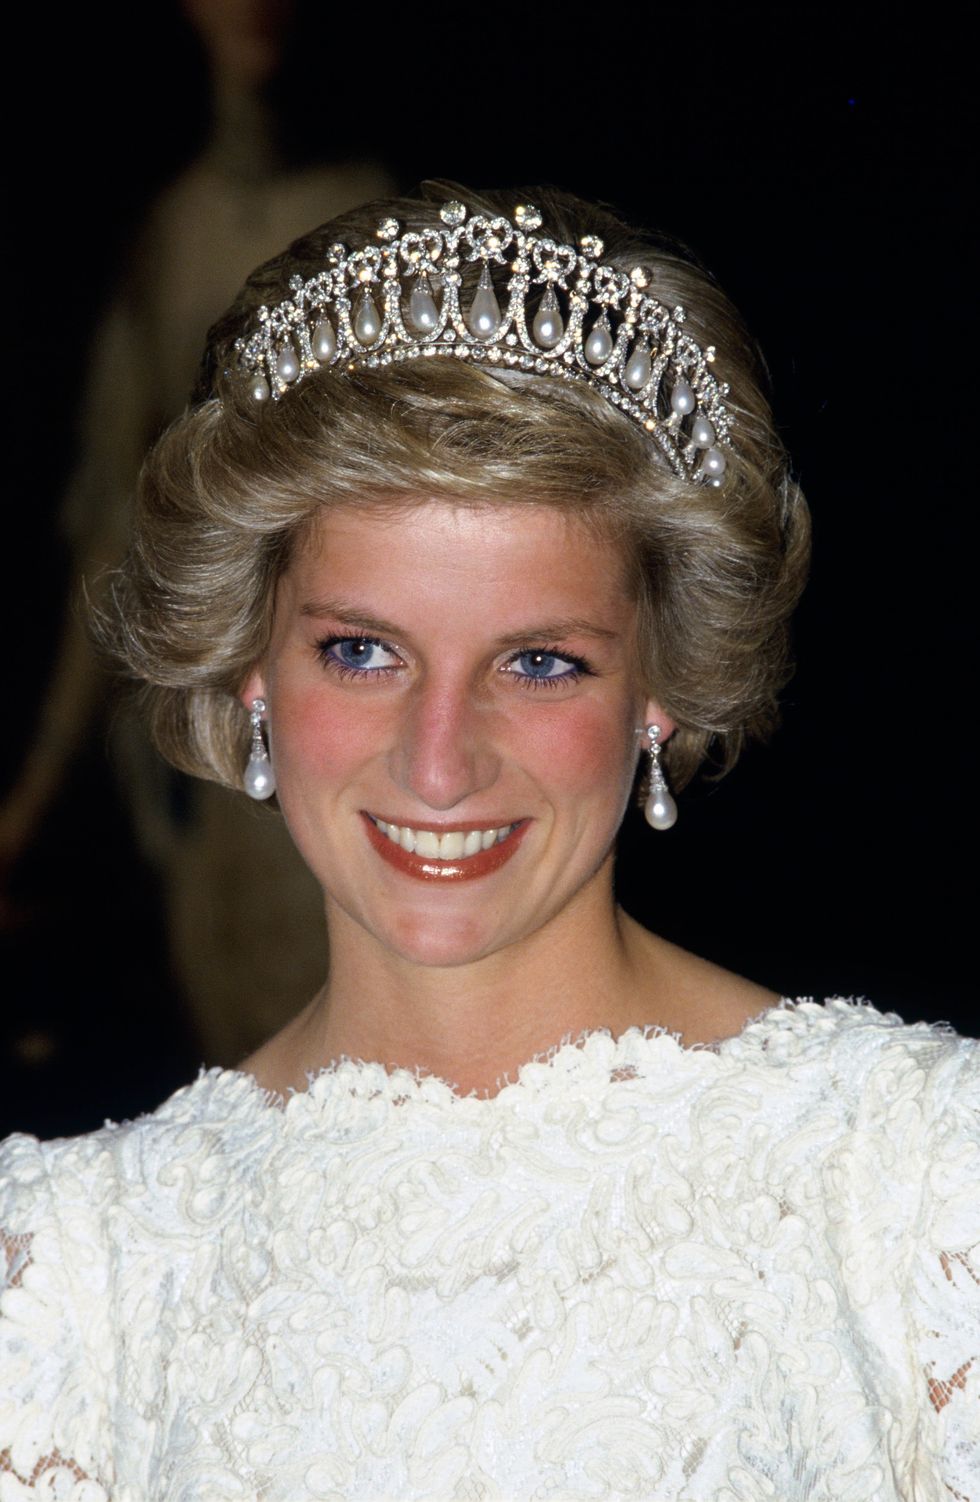 從英國皇室到met gala紅毯上的珍珠穿搭進化史！精選名人珍珠造型top 20